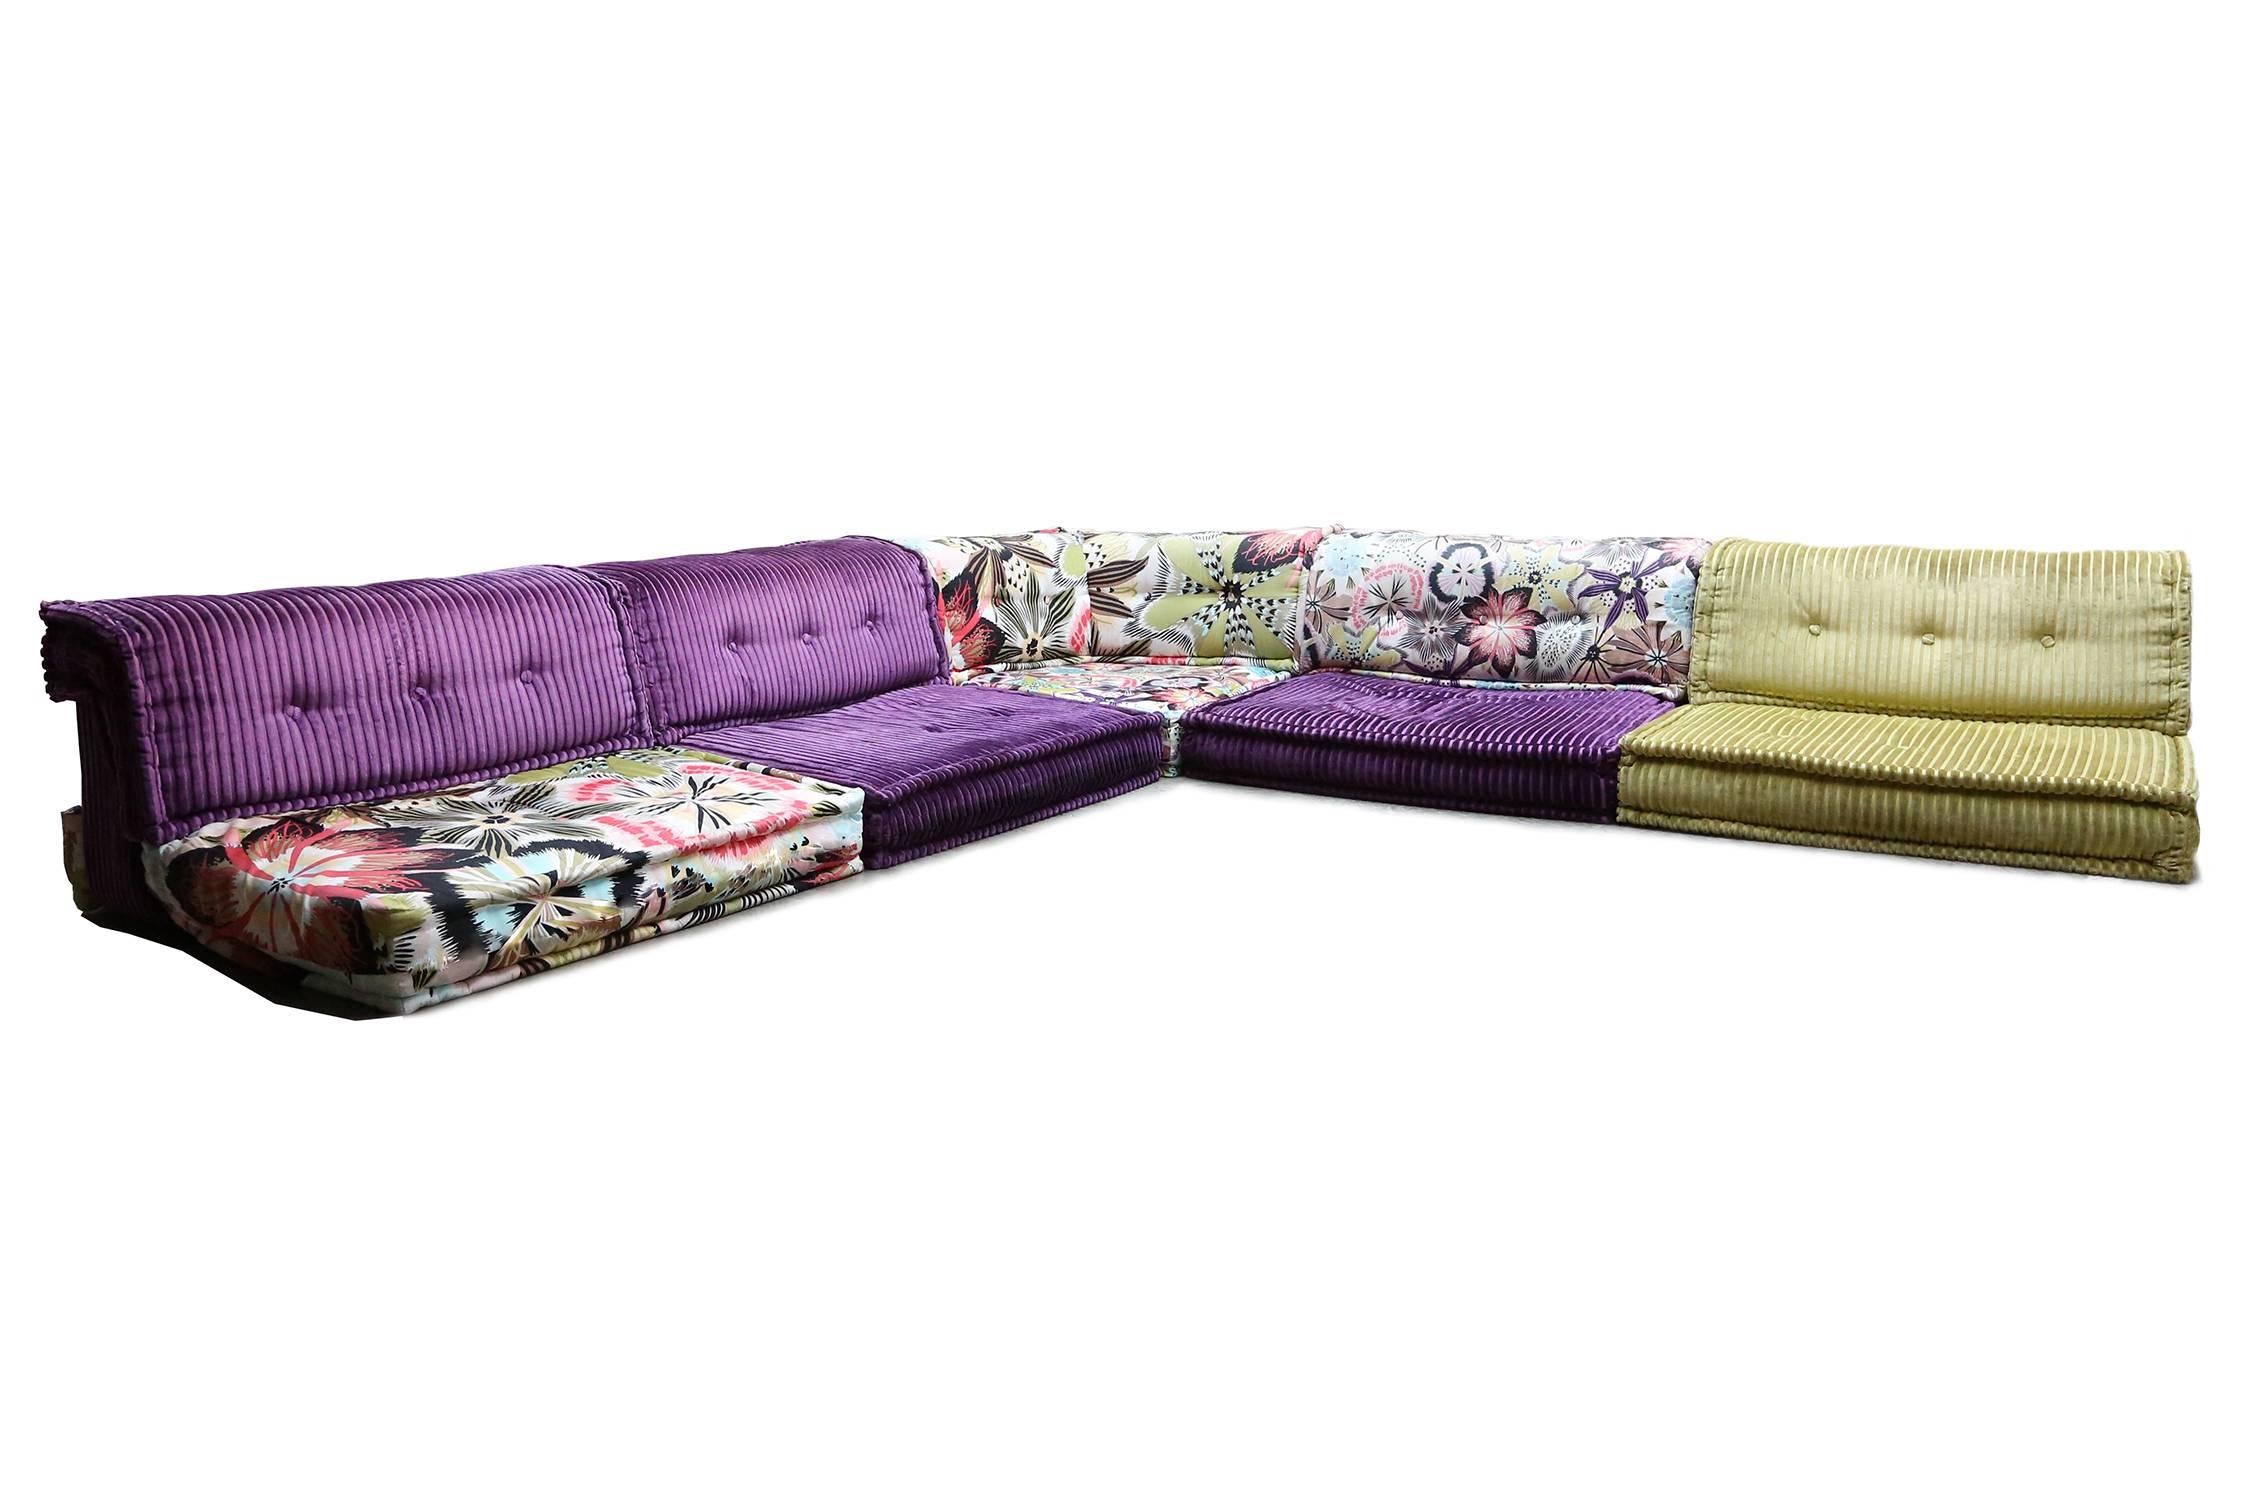 mah jong sofa price